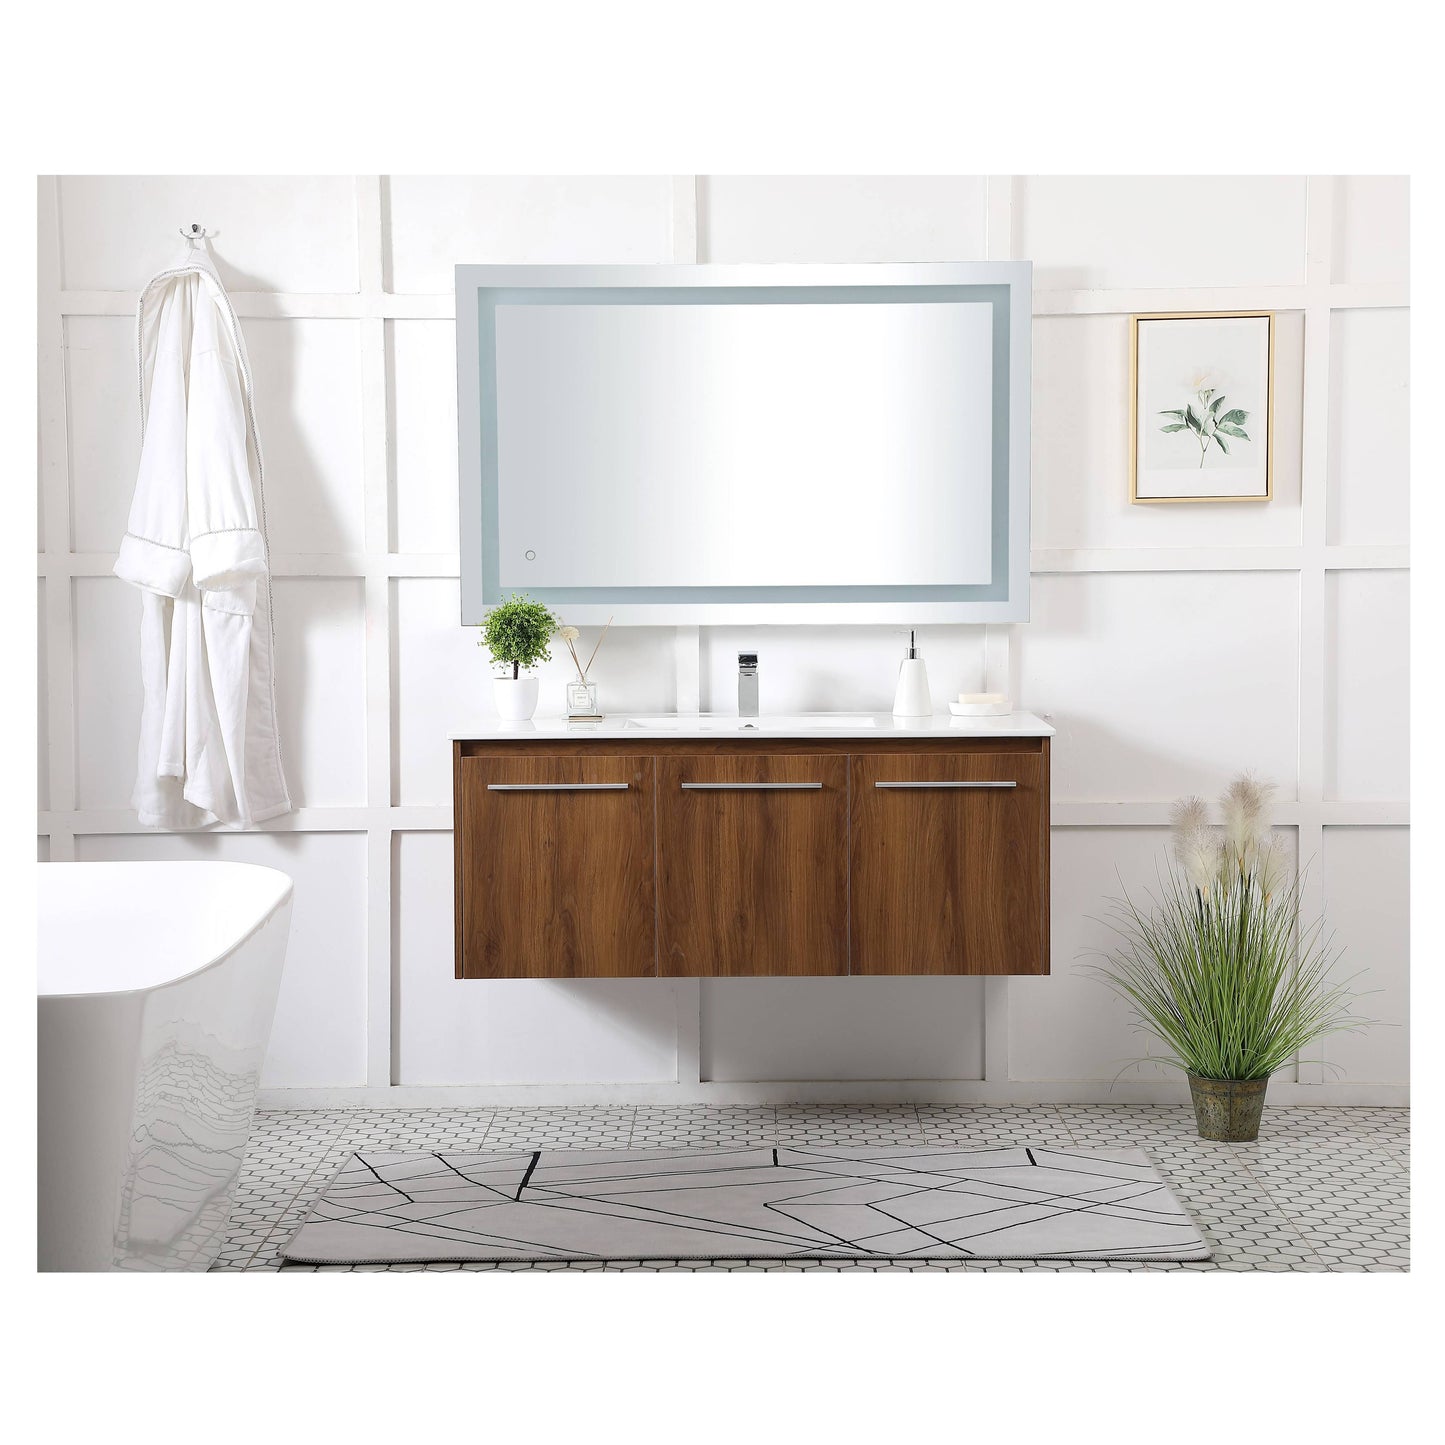 VF44048WB 48" Single Bathroom Floating Vanity in Walnut Brown